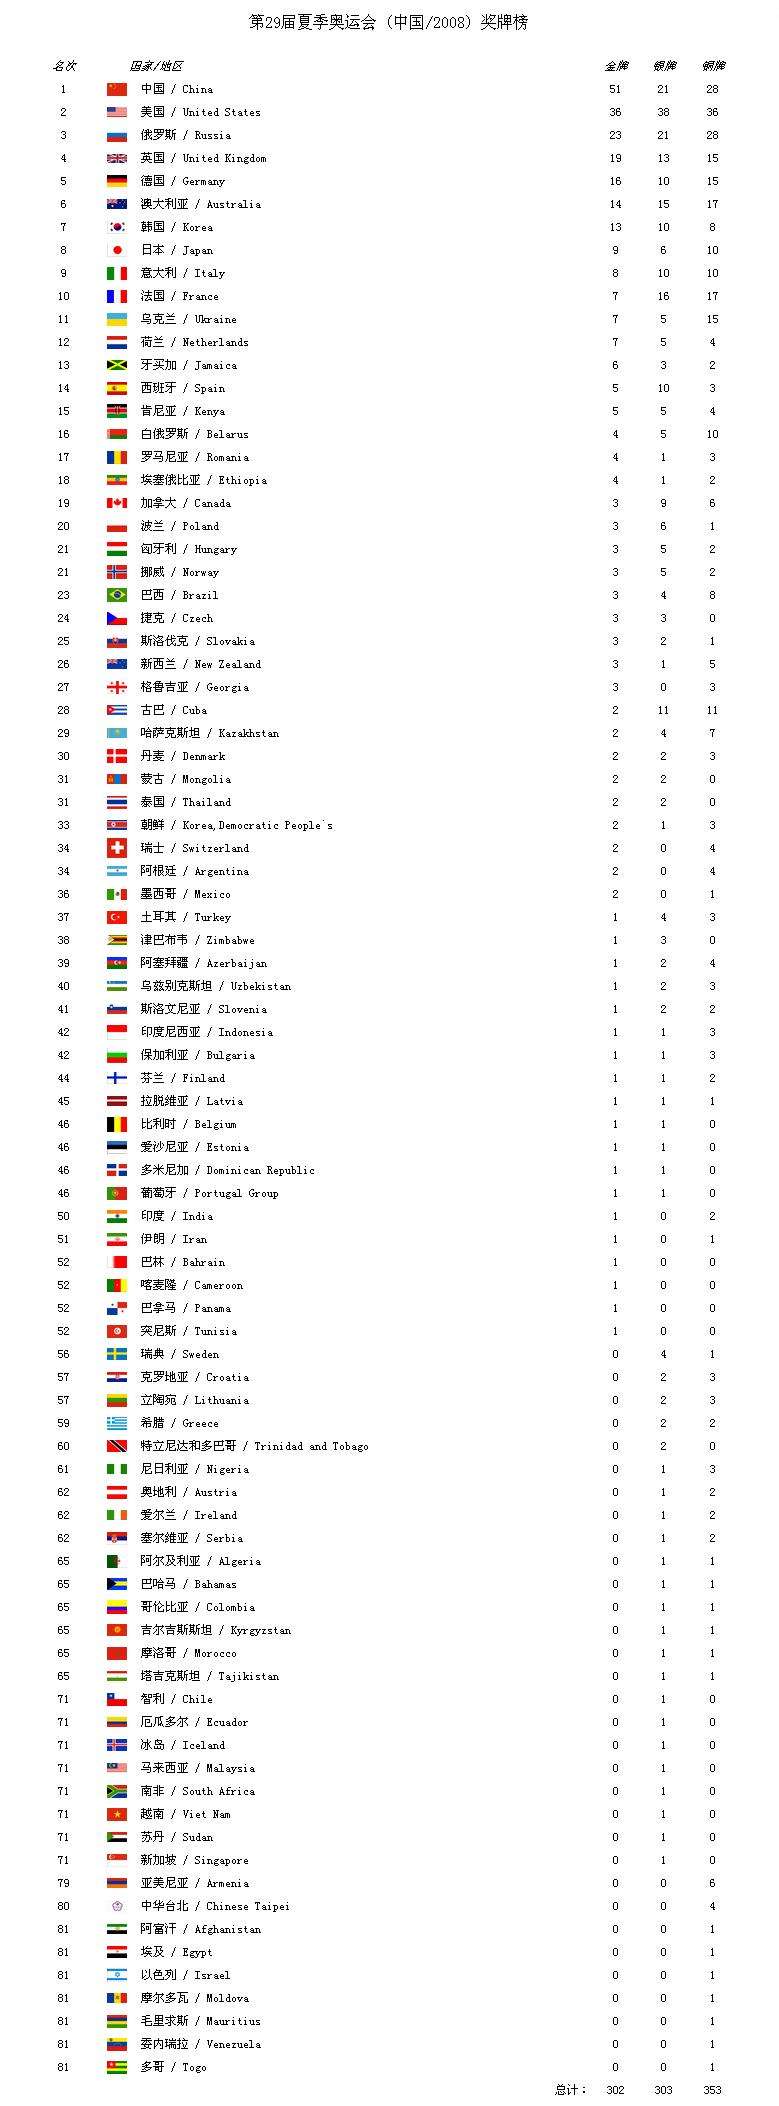 中国奥运会奖牌榜的简单介绍